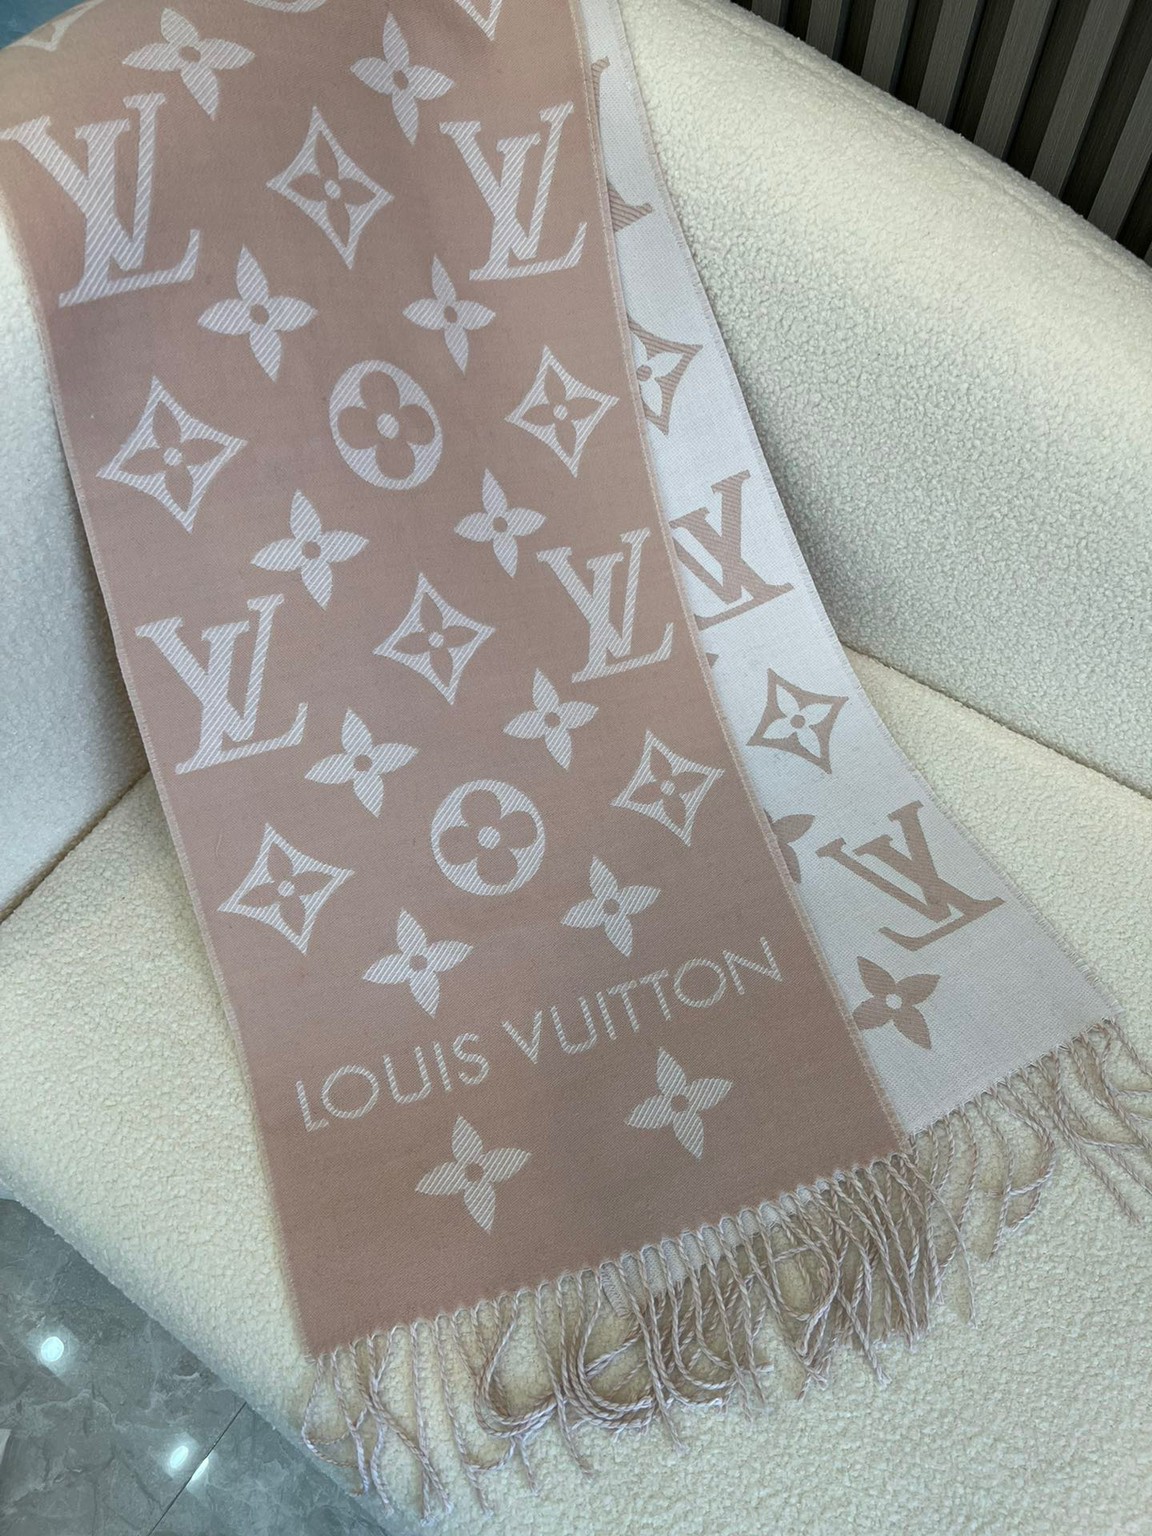 Louis Vuitton Beige Rose Monogram Silk & Wool Denim Shawl Louis Vuitton